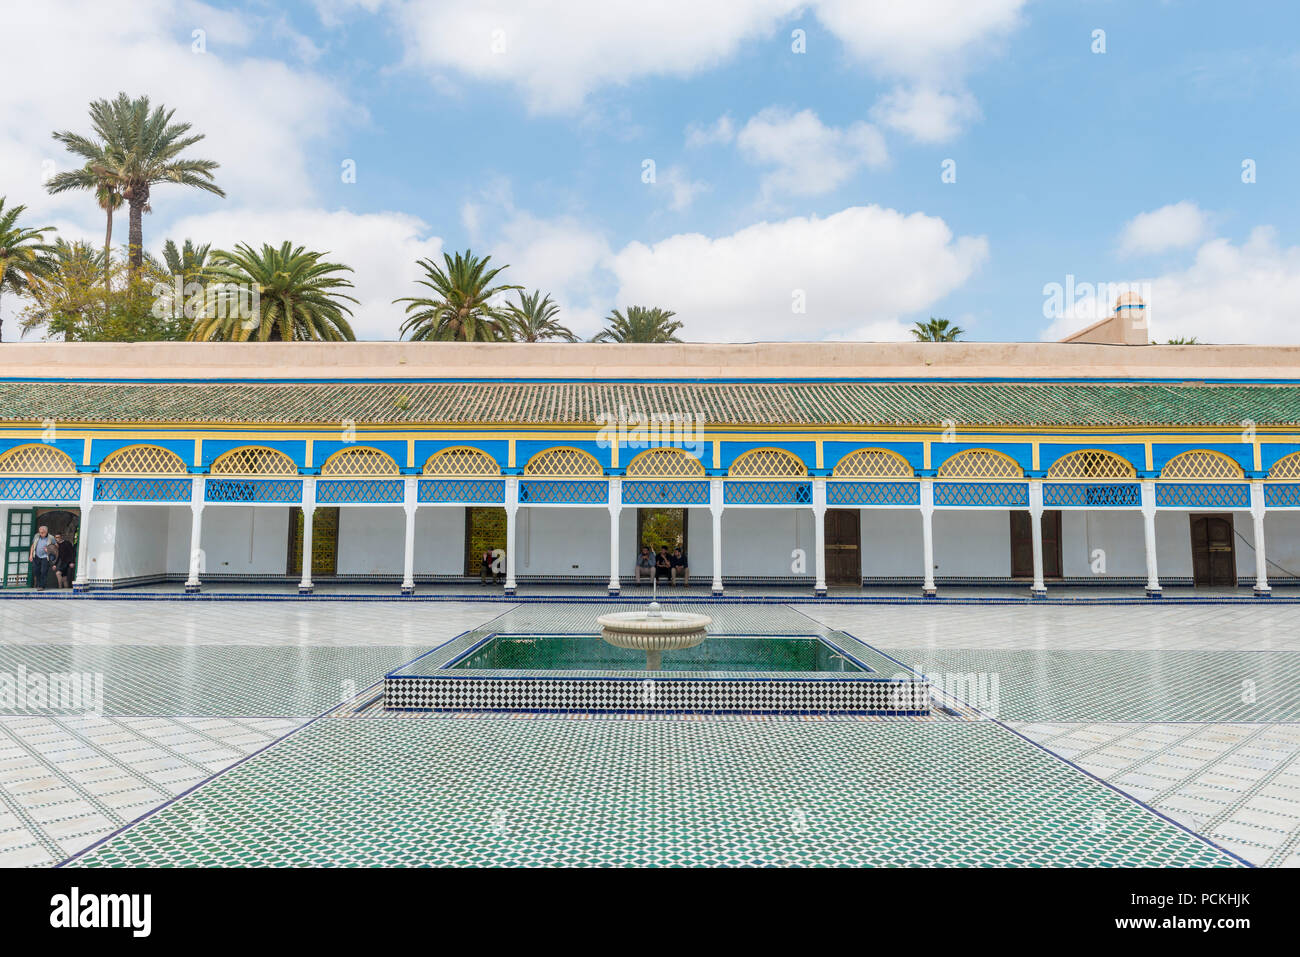 Cour richement décorée avec des colonnes et une fontaine, l'ornementation arabe, mosaïque, harem, Palais Bahia, Marrakech, Maroc Banque D'Images